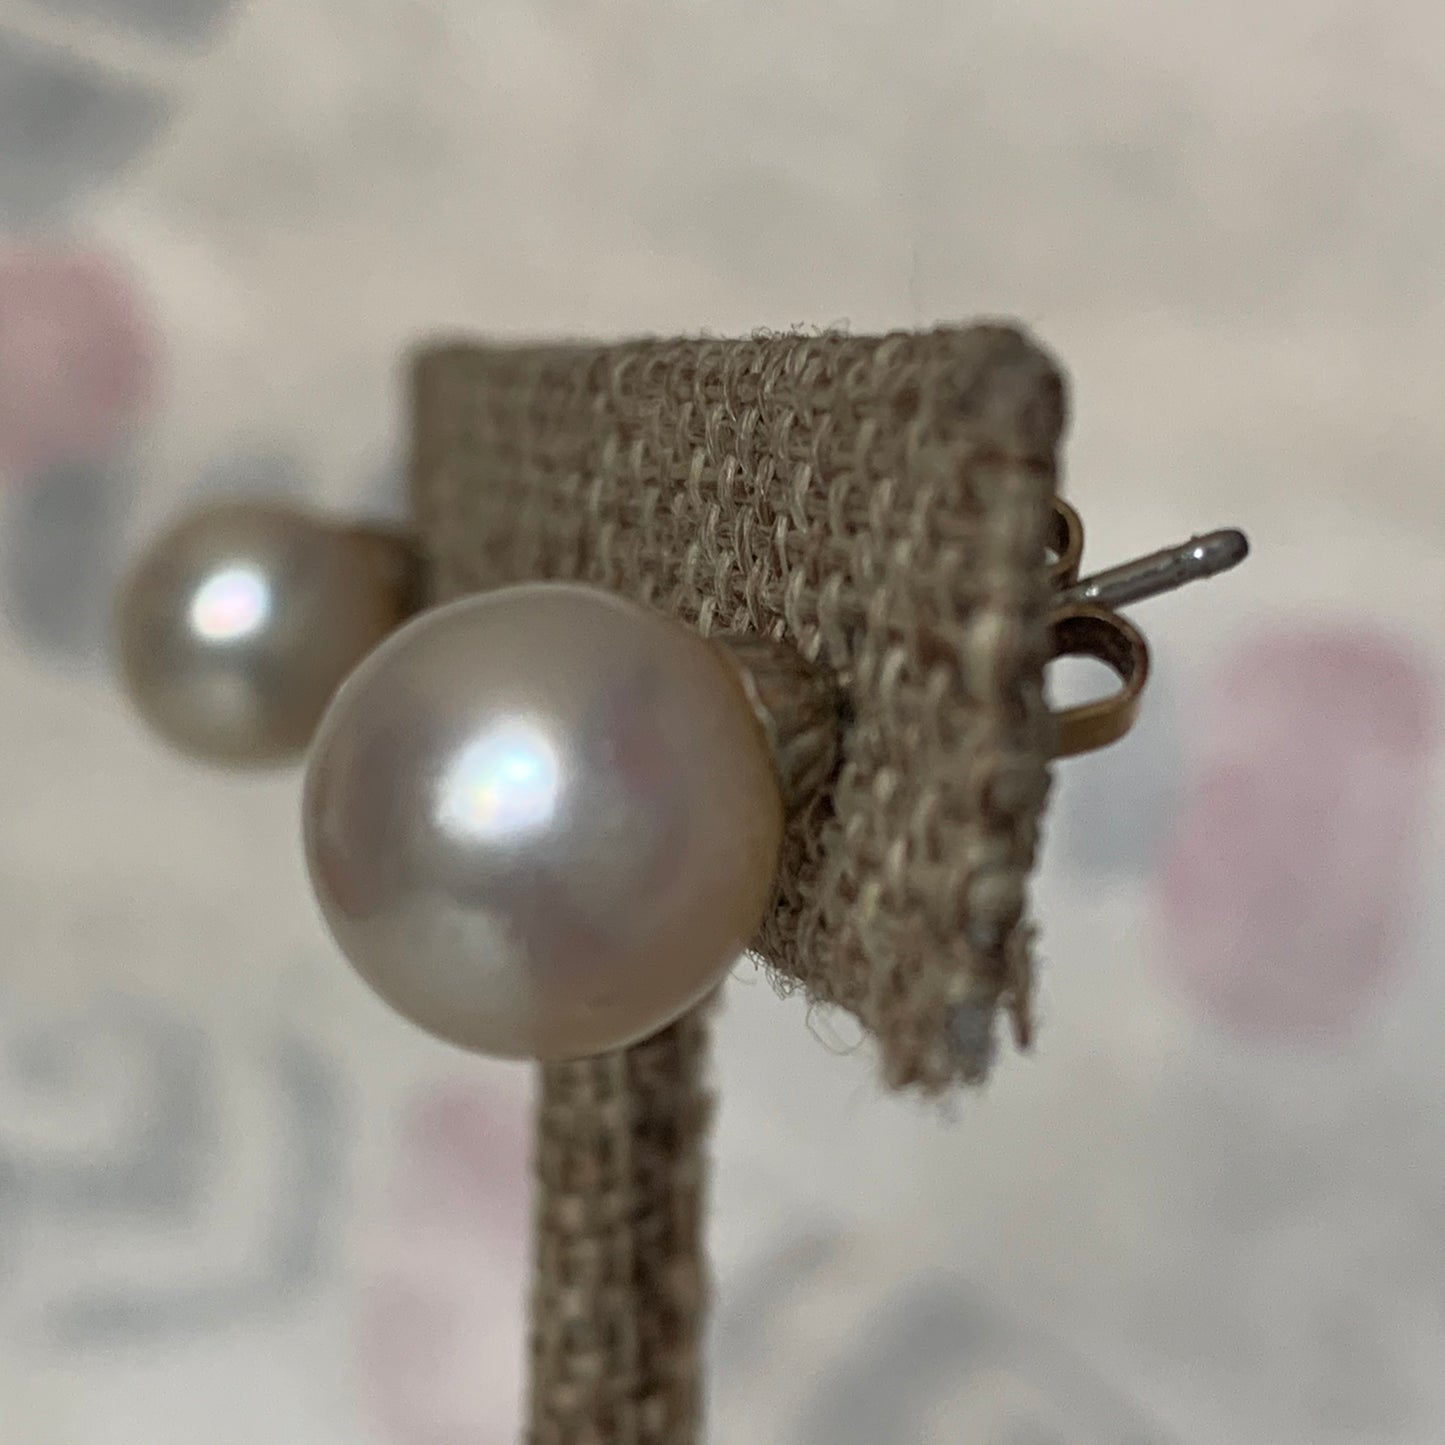 A pair of pearl stud earrings